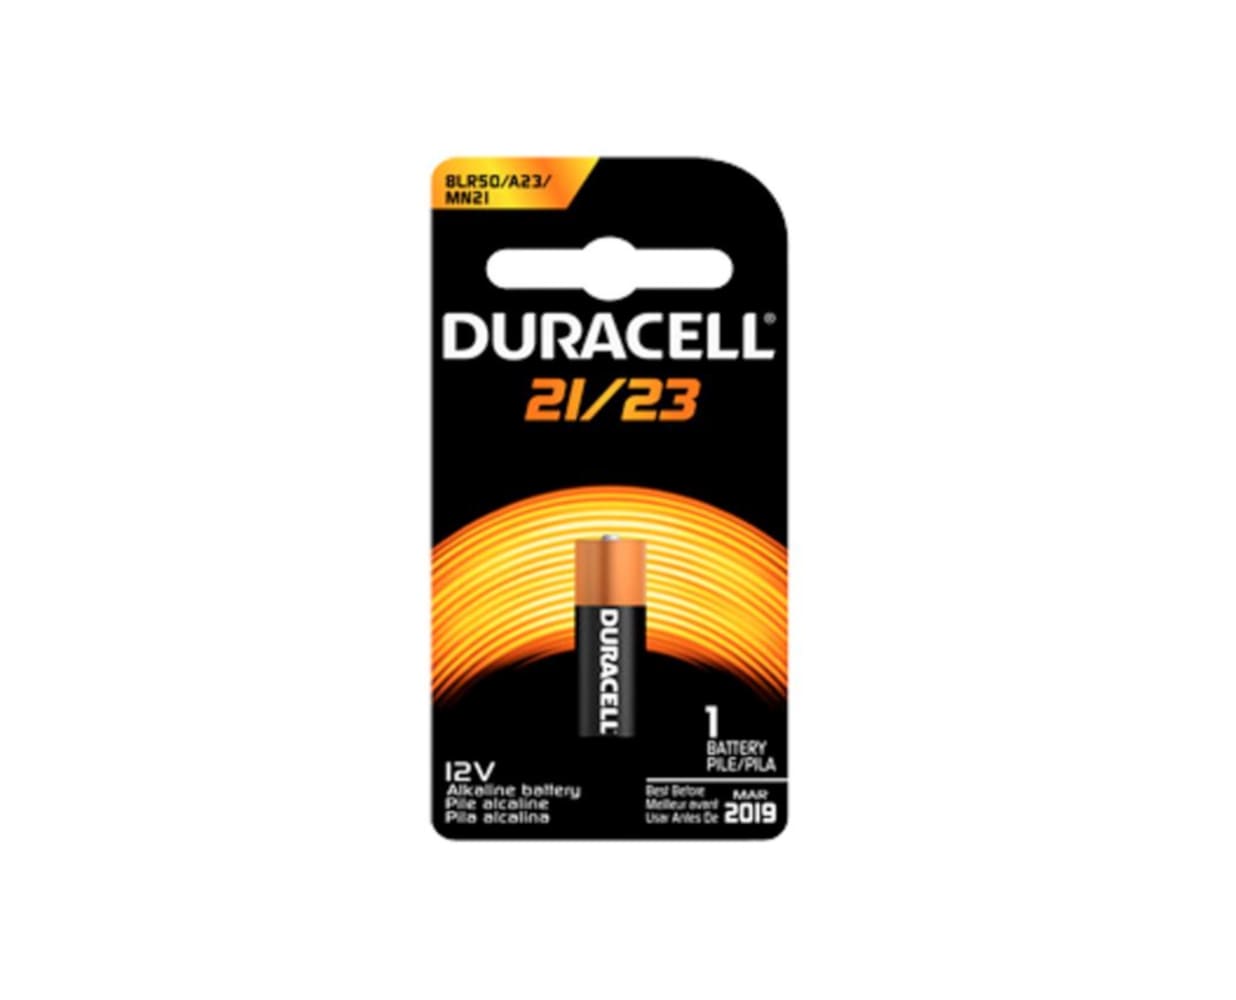 Duracell 12V Alkaline Battery MN21/23 - 330167